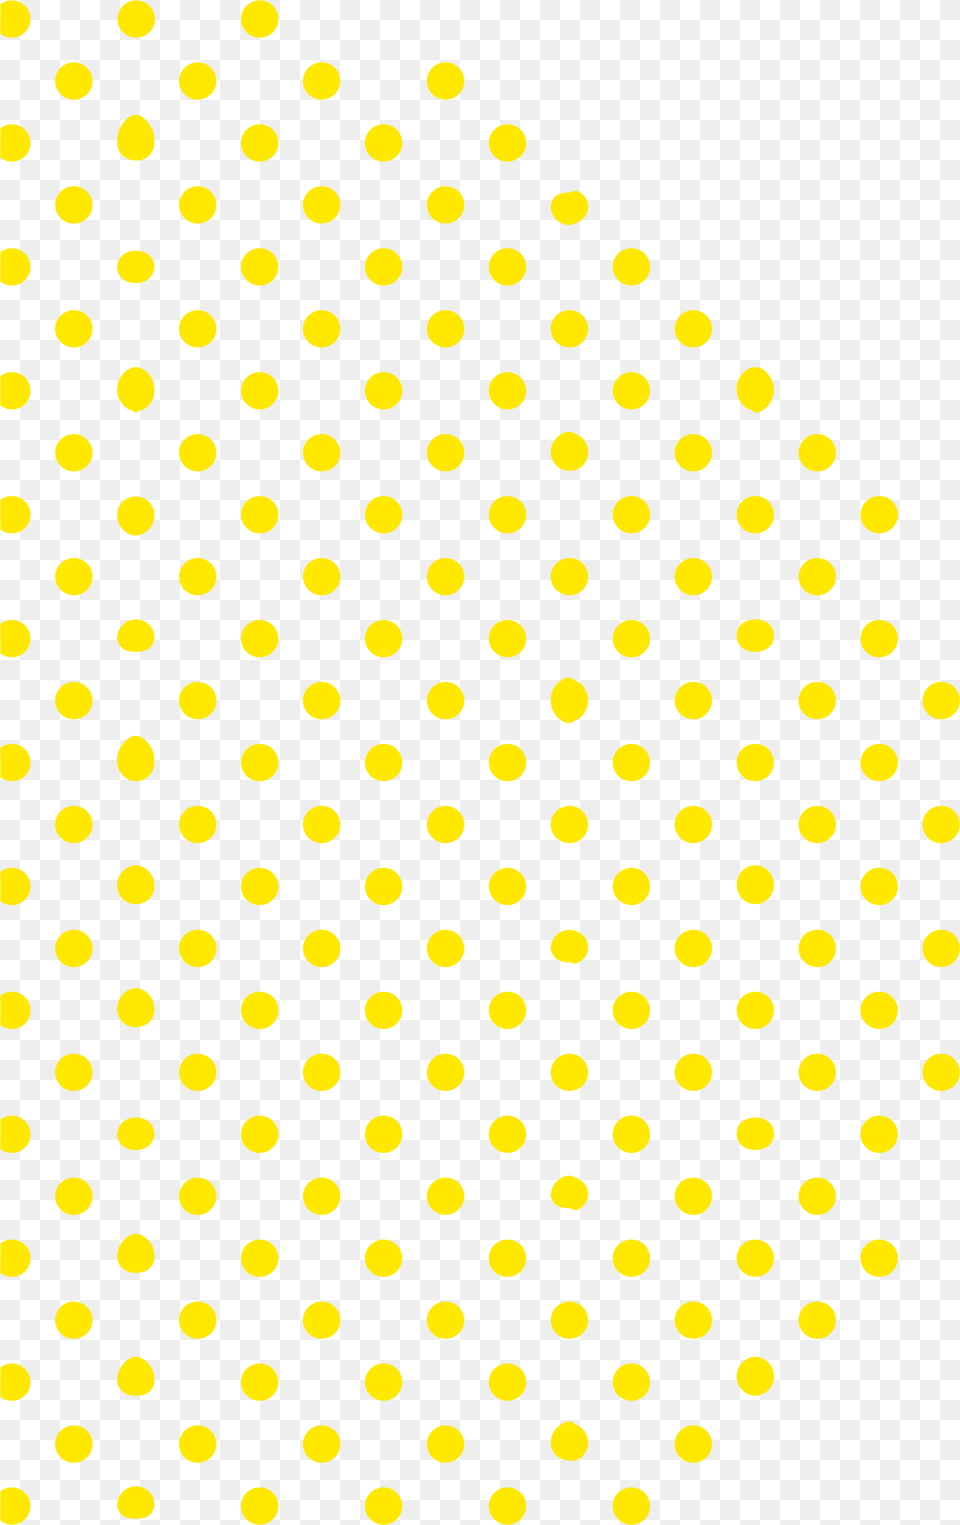 Polka Dots, Pattern, Polka Dot Free Png Download